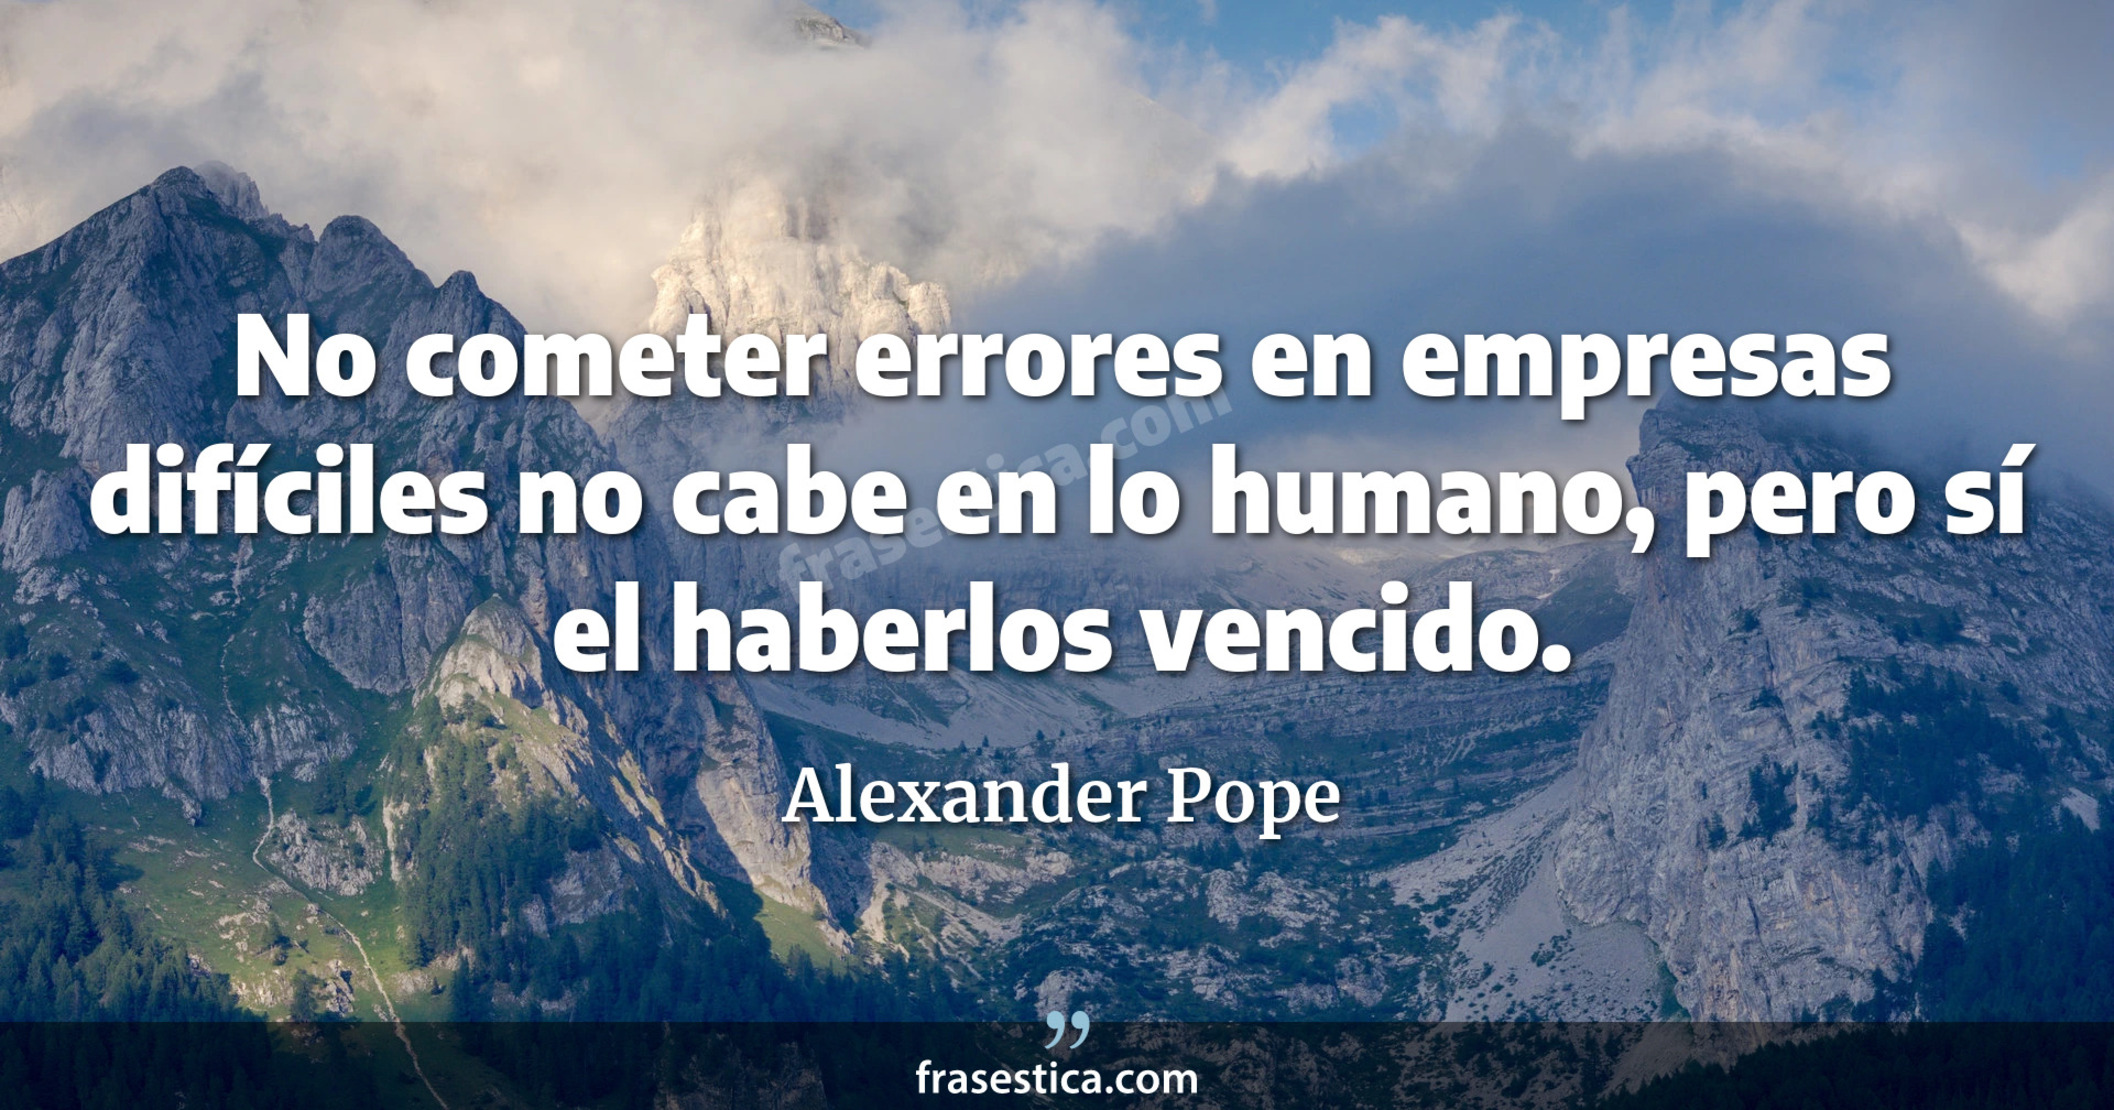 No cometer errores en empresas difíciles no cabe en lo humano, pero sí el haberlos vencido. - Alexander Pope